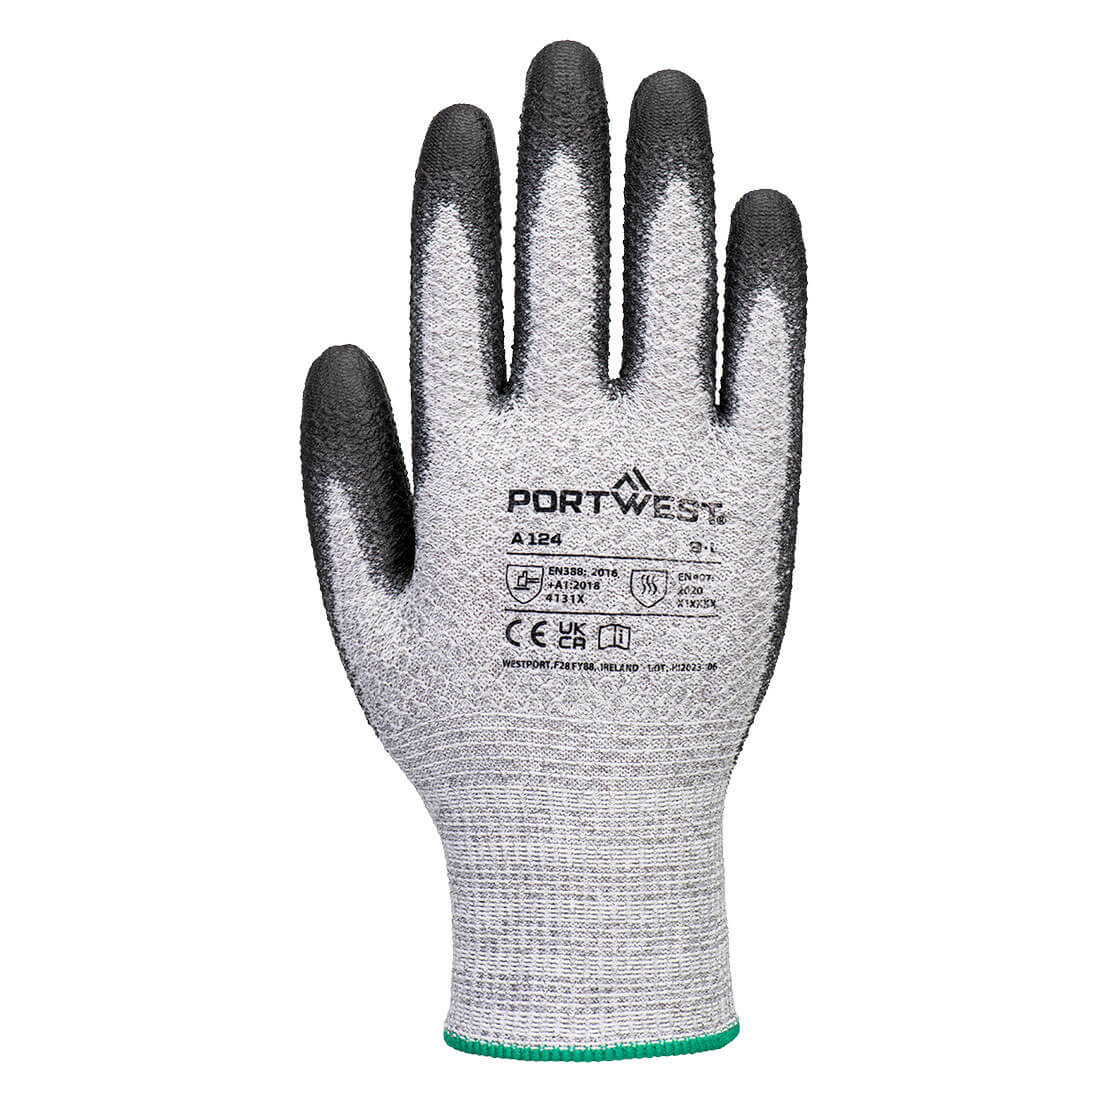 Gant Grip 13 PU Diamond knit (Pack 12) - Les équipements de protection individuelle